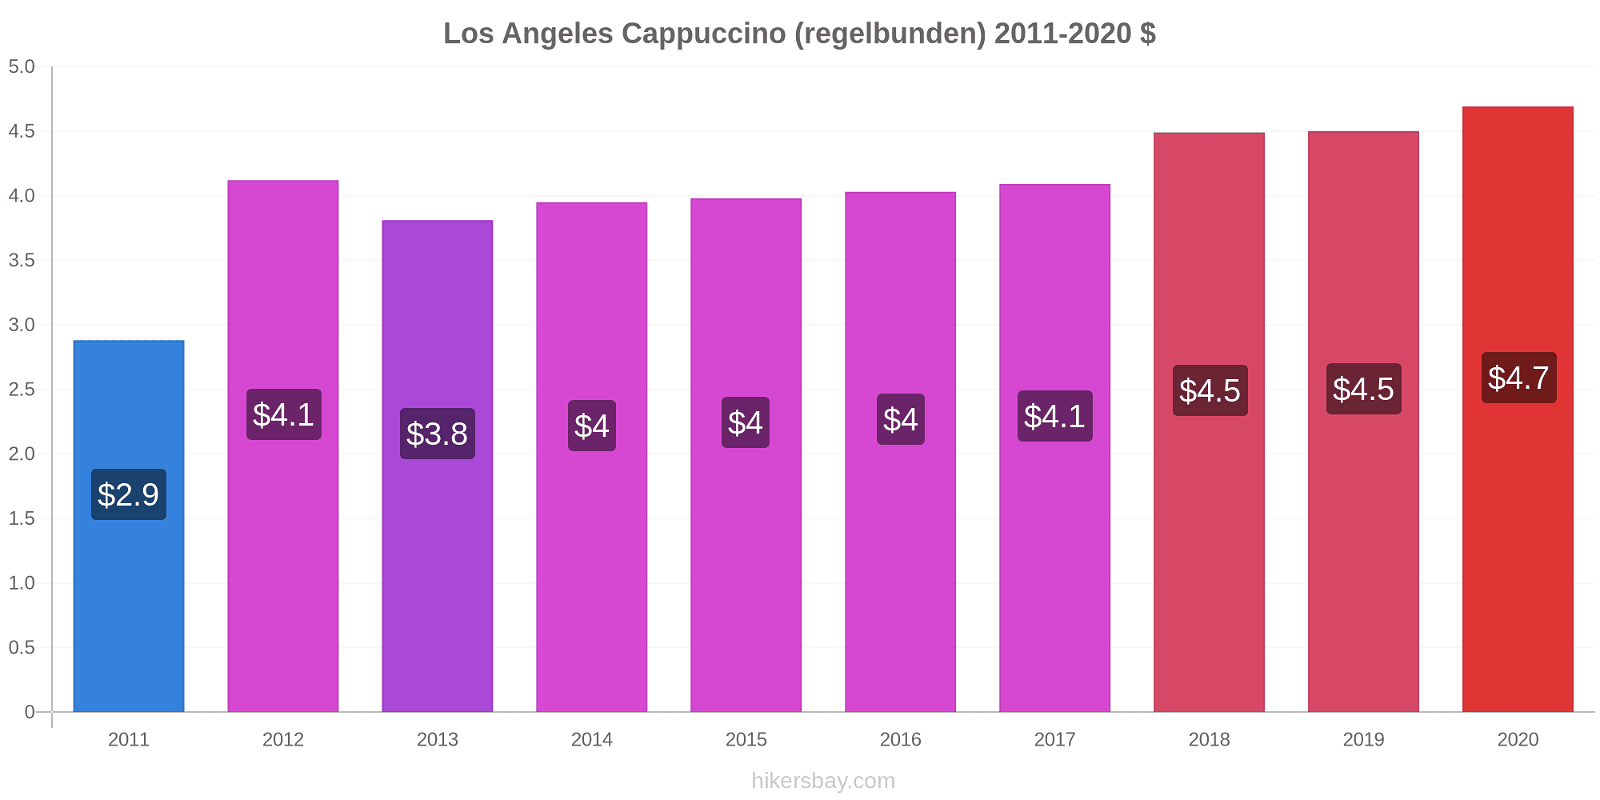 Los Angeles prisförändringar Cappuccino (regelbunden) hikersbay.com